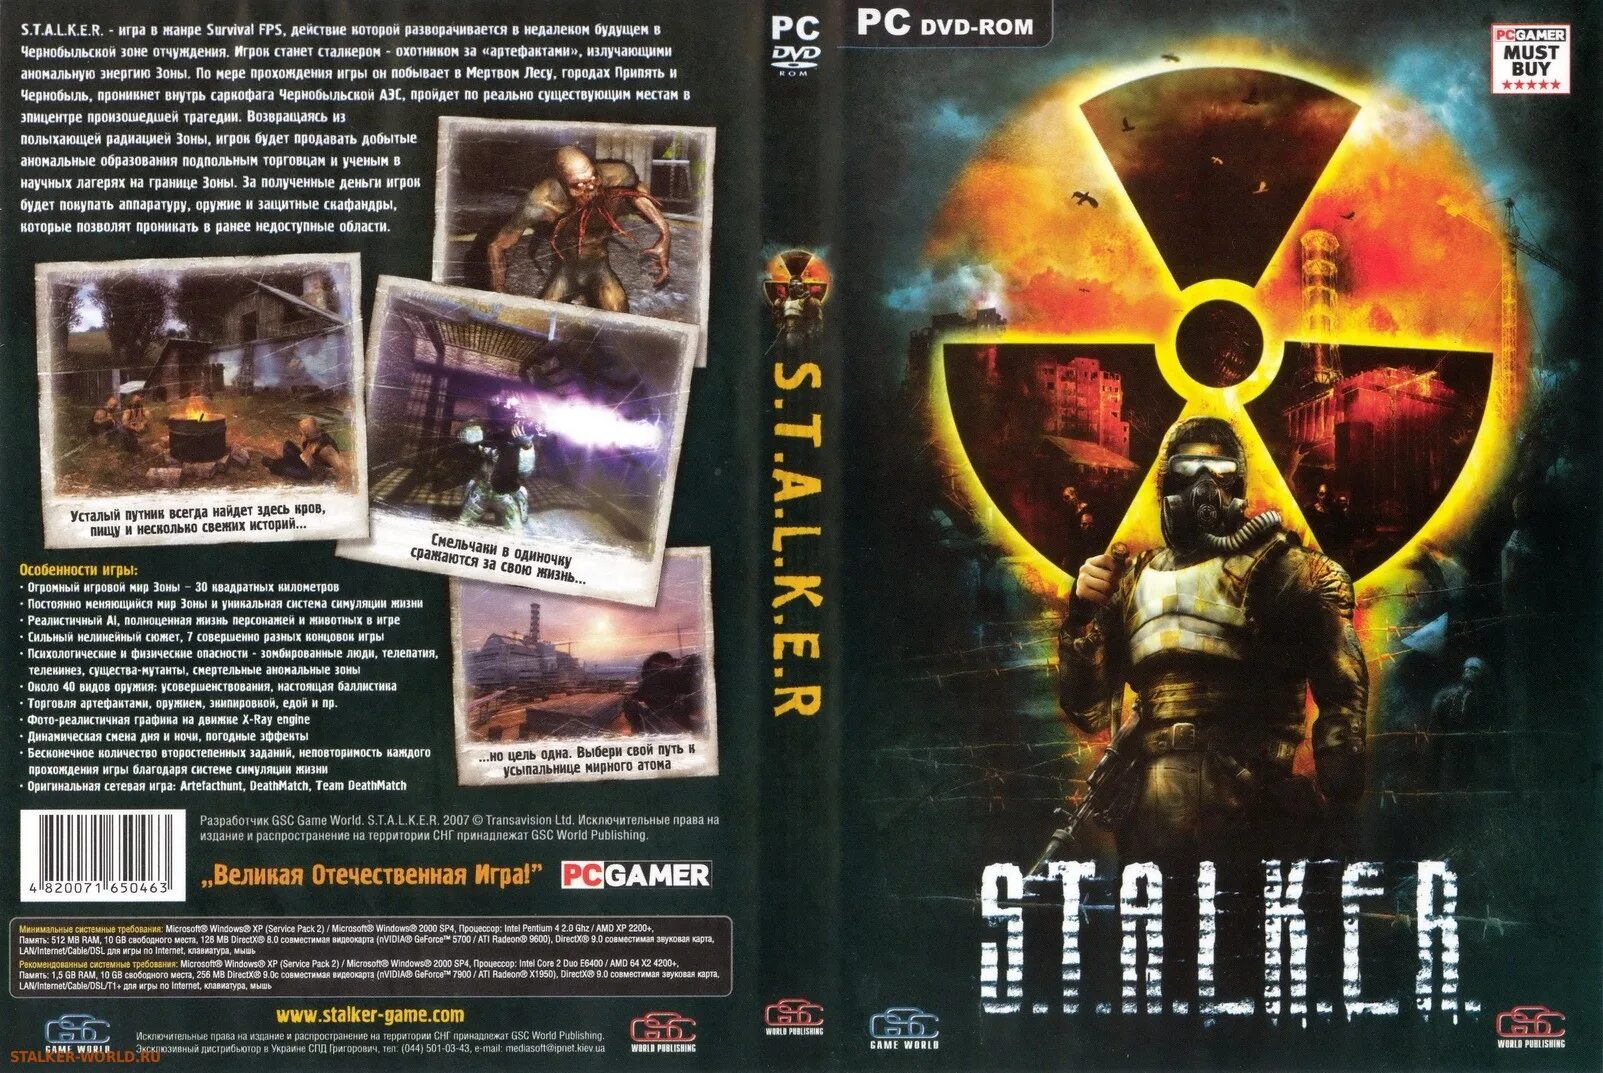 Stalker CD диск Shadow of Chernobyl. Диск сталкер тень Чернобыля диск. Диск с игрой сталкер тень Чернобыля. Сталкер обложка диска. Версии сталкера оригинал